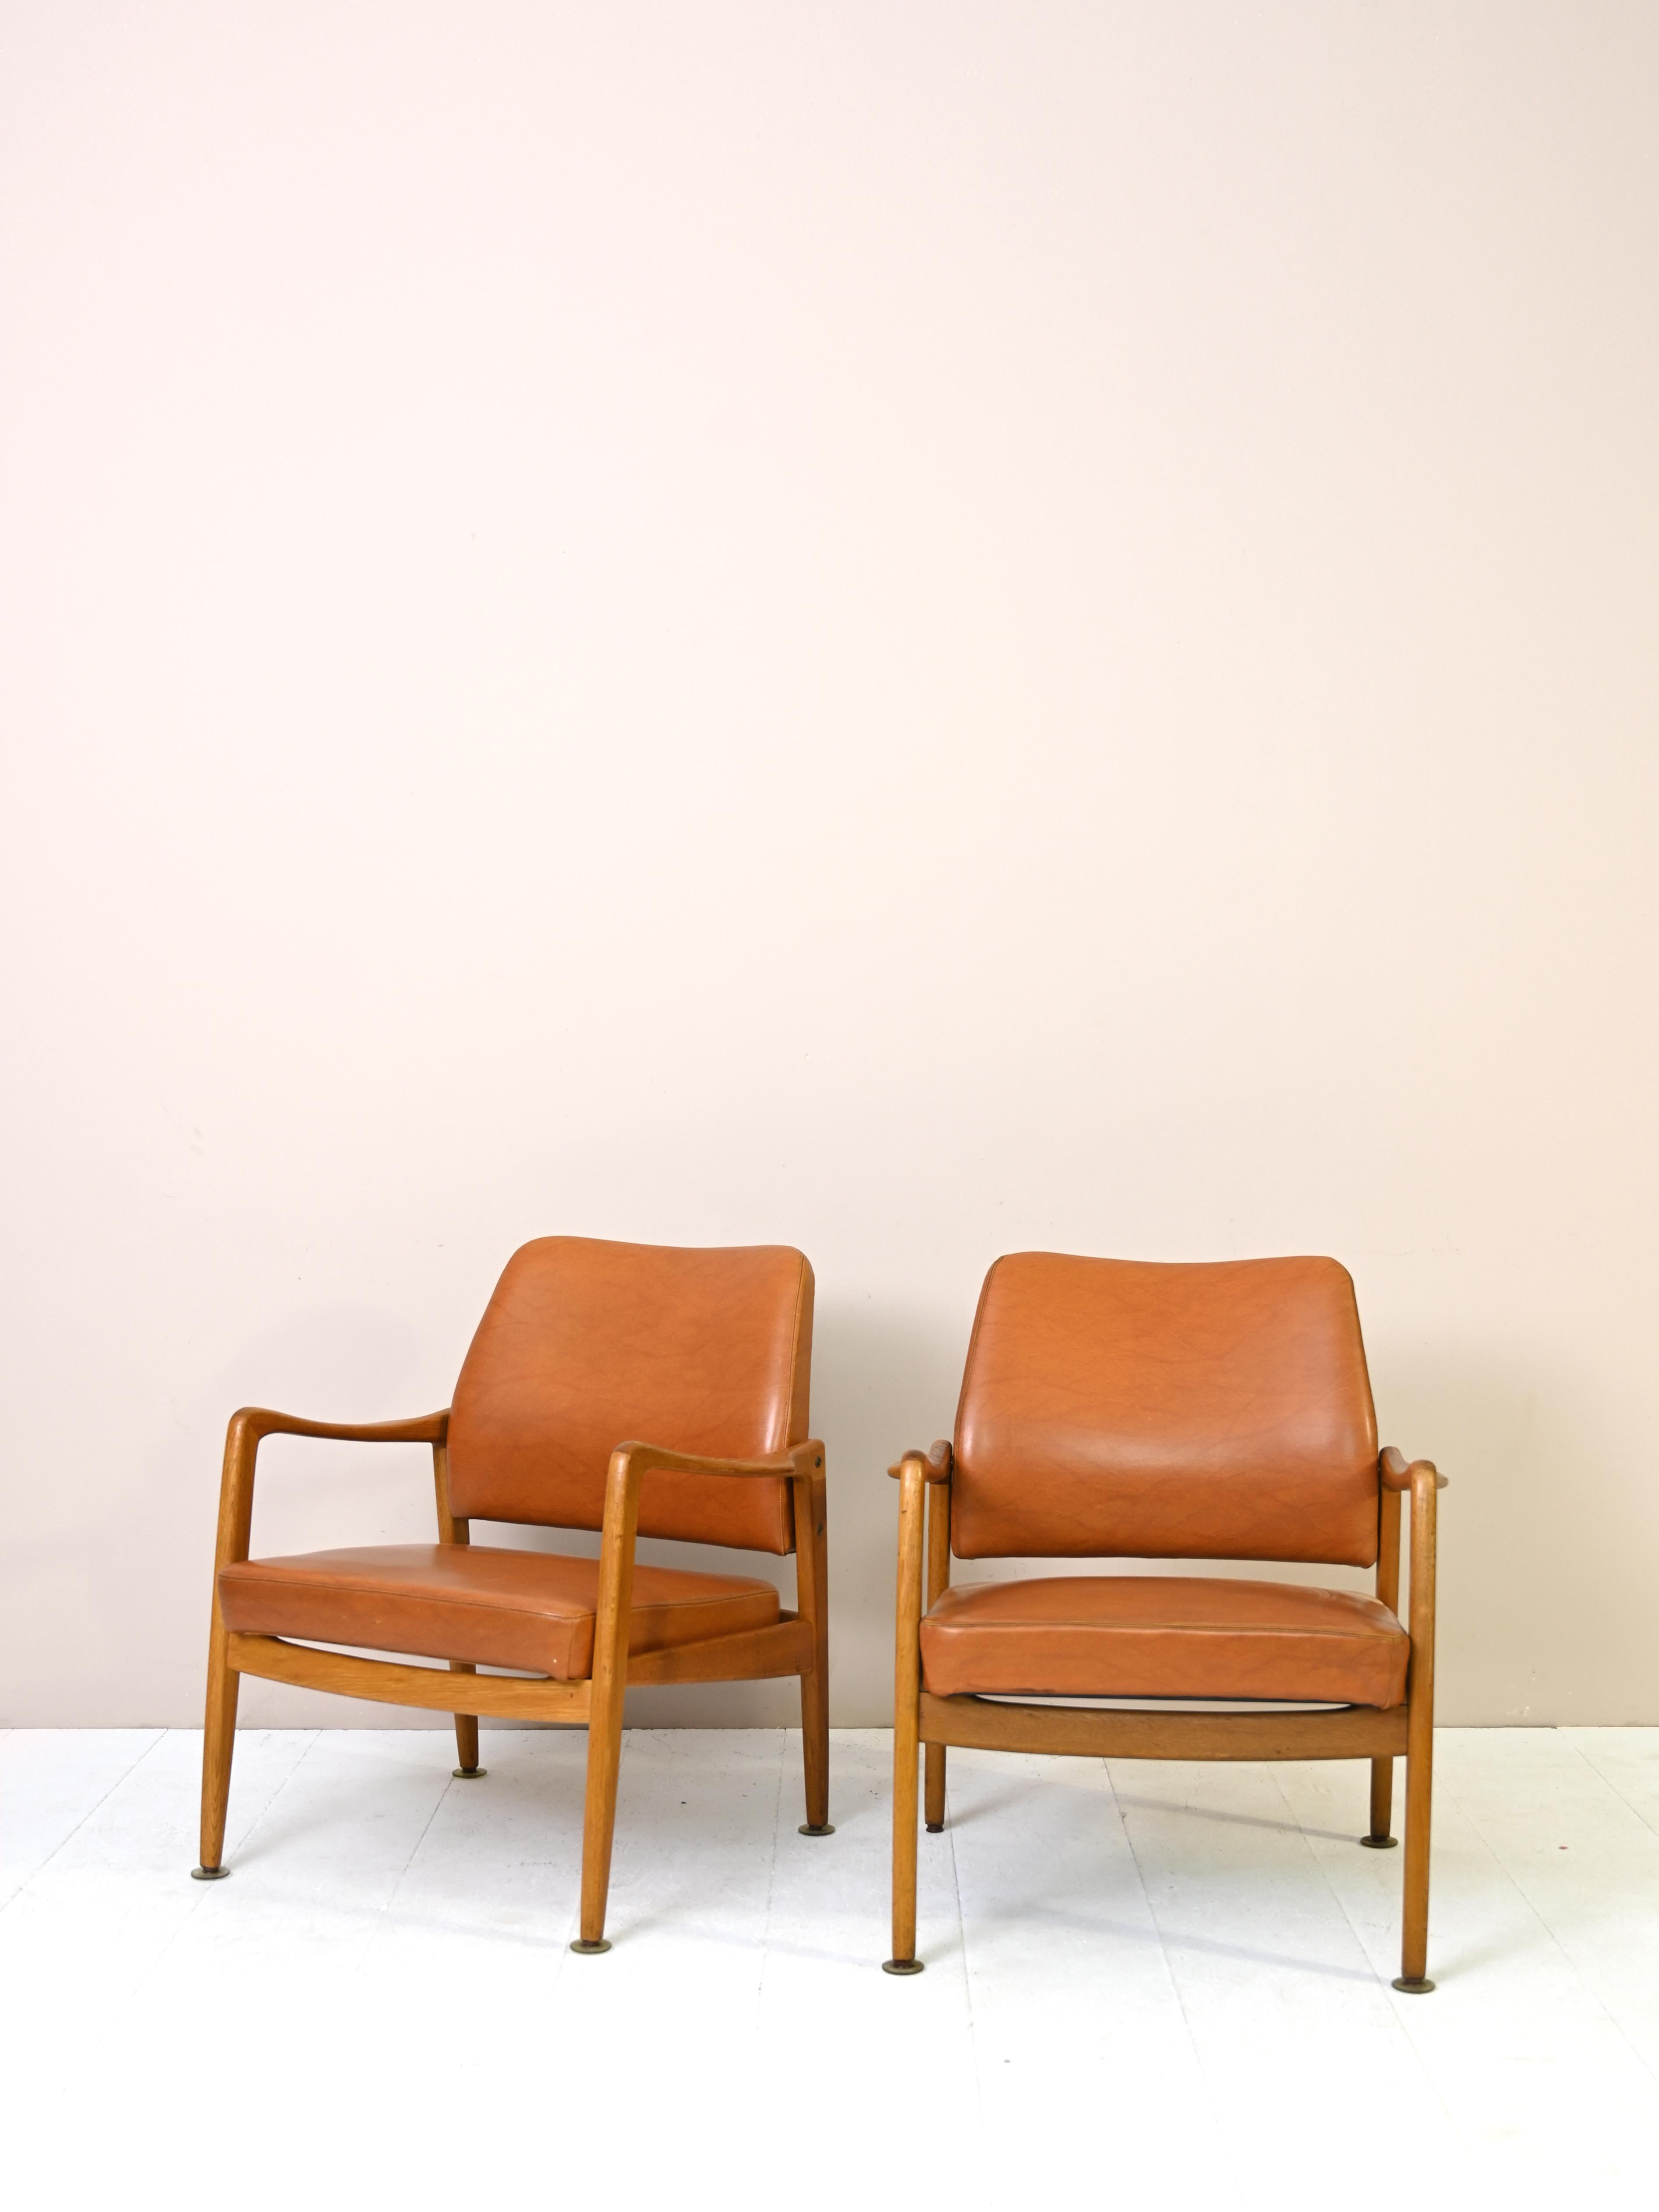 Paire de fauteuils scandinaves originaux des années 1950 en bois de teck et cuir couleur cognac.

Ces sièges confortables et d'une beauté intemporelle peuvent être placés dans un salon ou une chambre à coucher et donneront à la pièce une touche